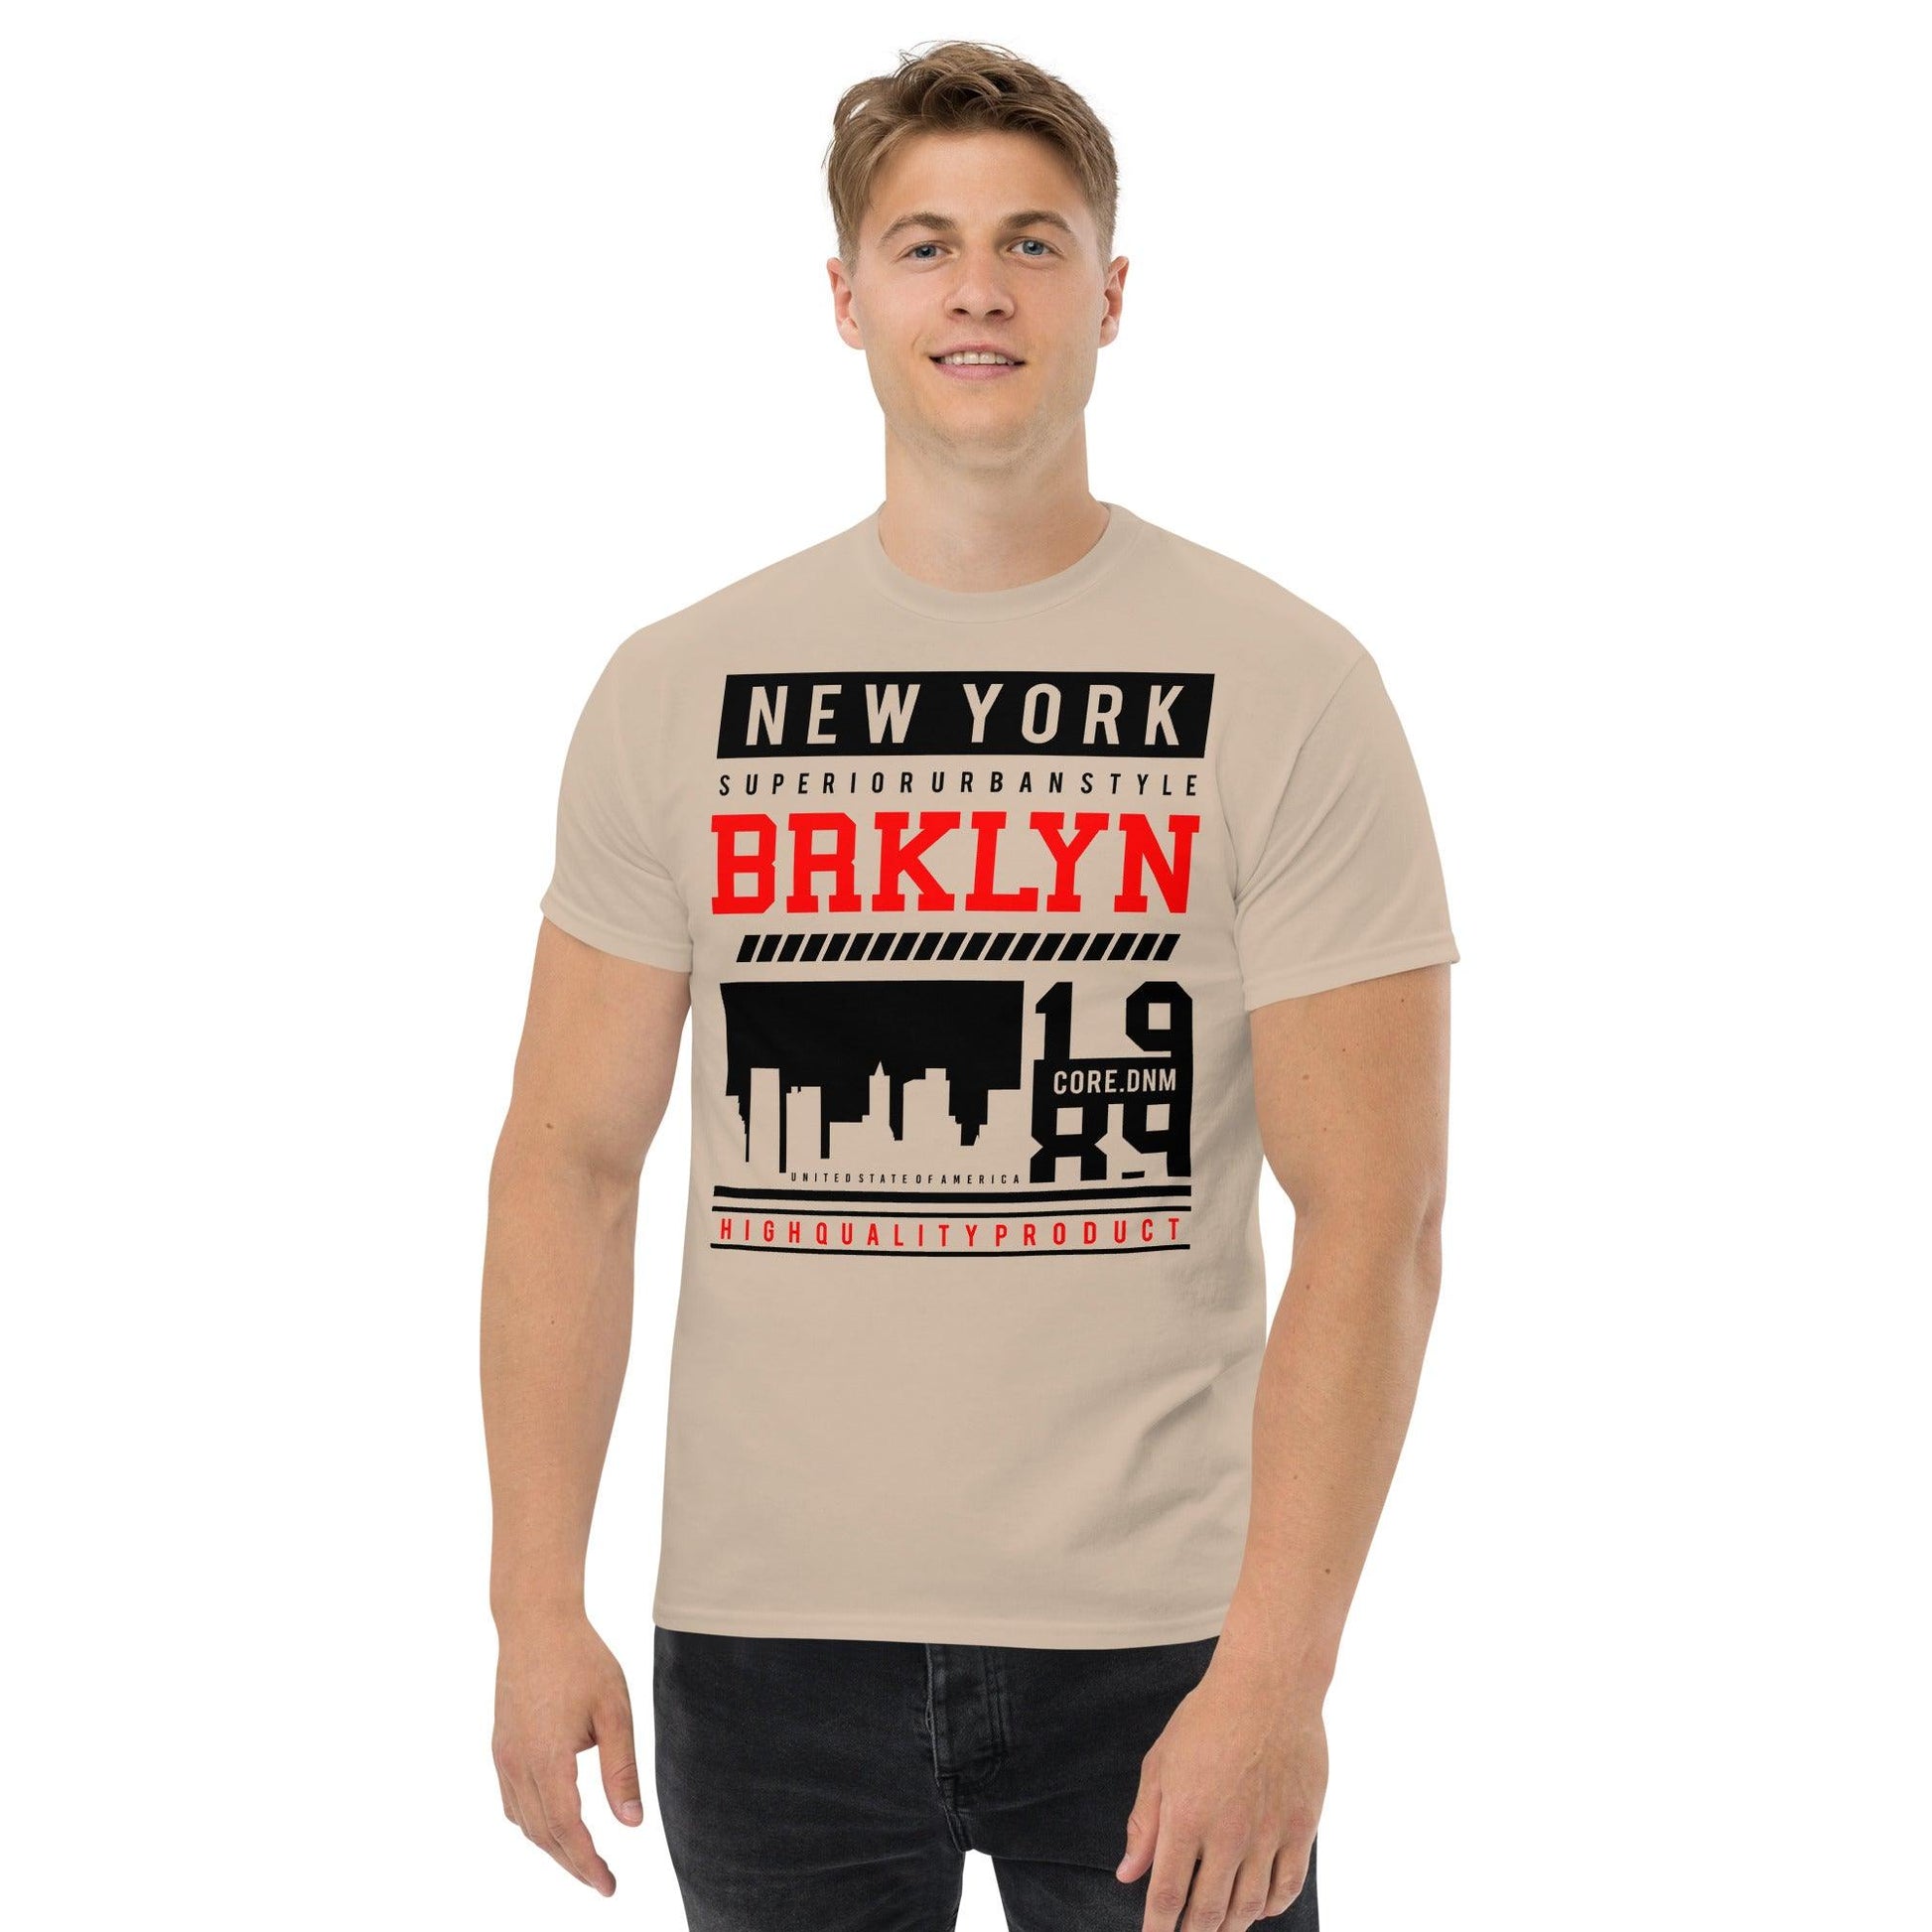 New York Urban Style Streetwear Classic T-shirt - L & M Kee, LLC